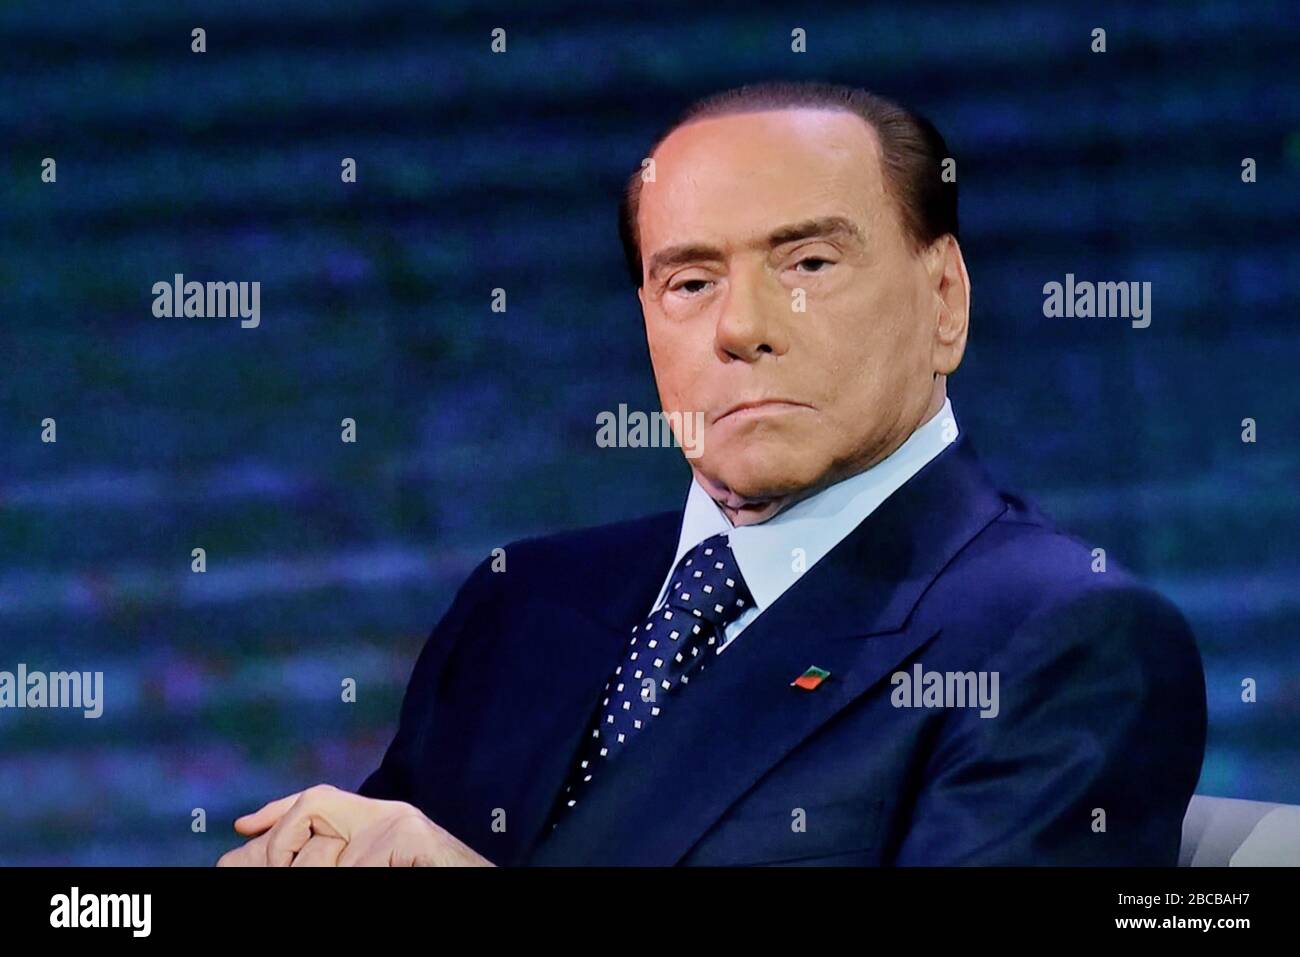 Silvio Berlusconi Italian politician and entrepreneur Stock Photo